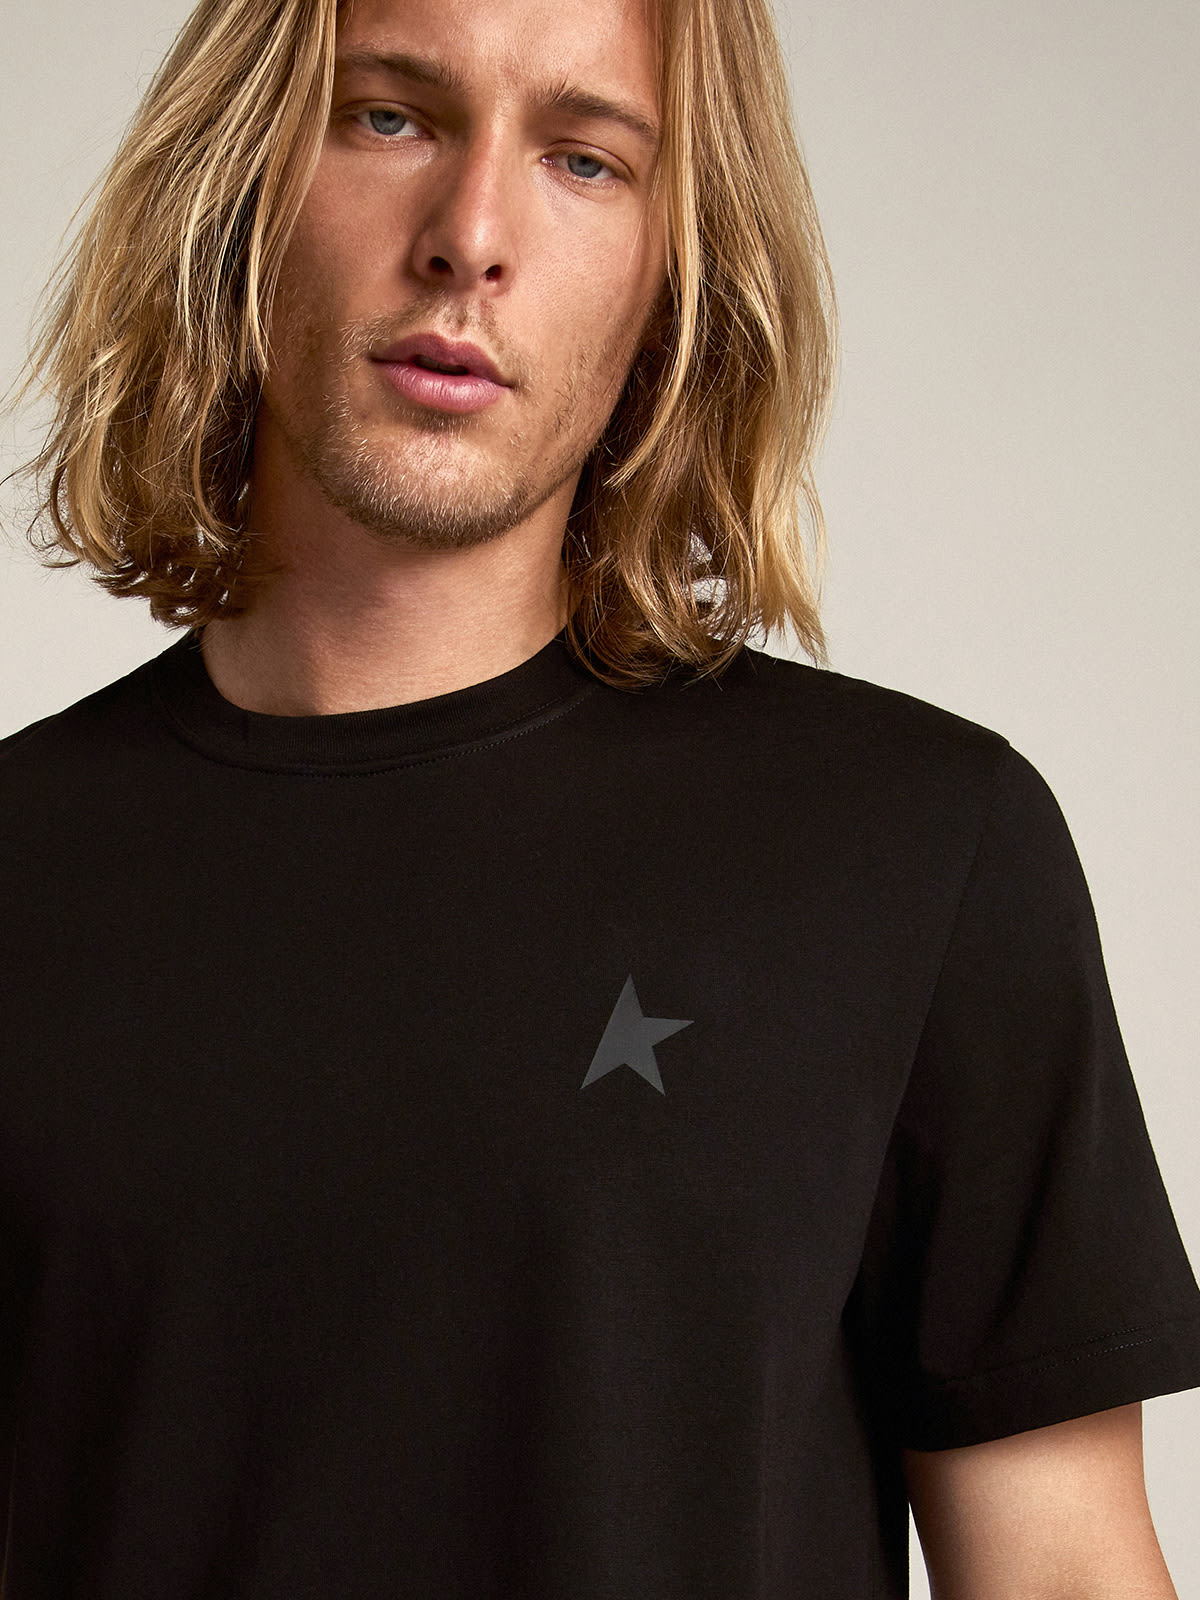 Golden Goose - Schwarzes T-Shirt aus der Star Collection mit Ton in Ton gehaltenem Stern auf der Vorderseite in 